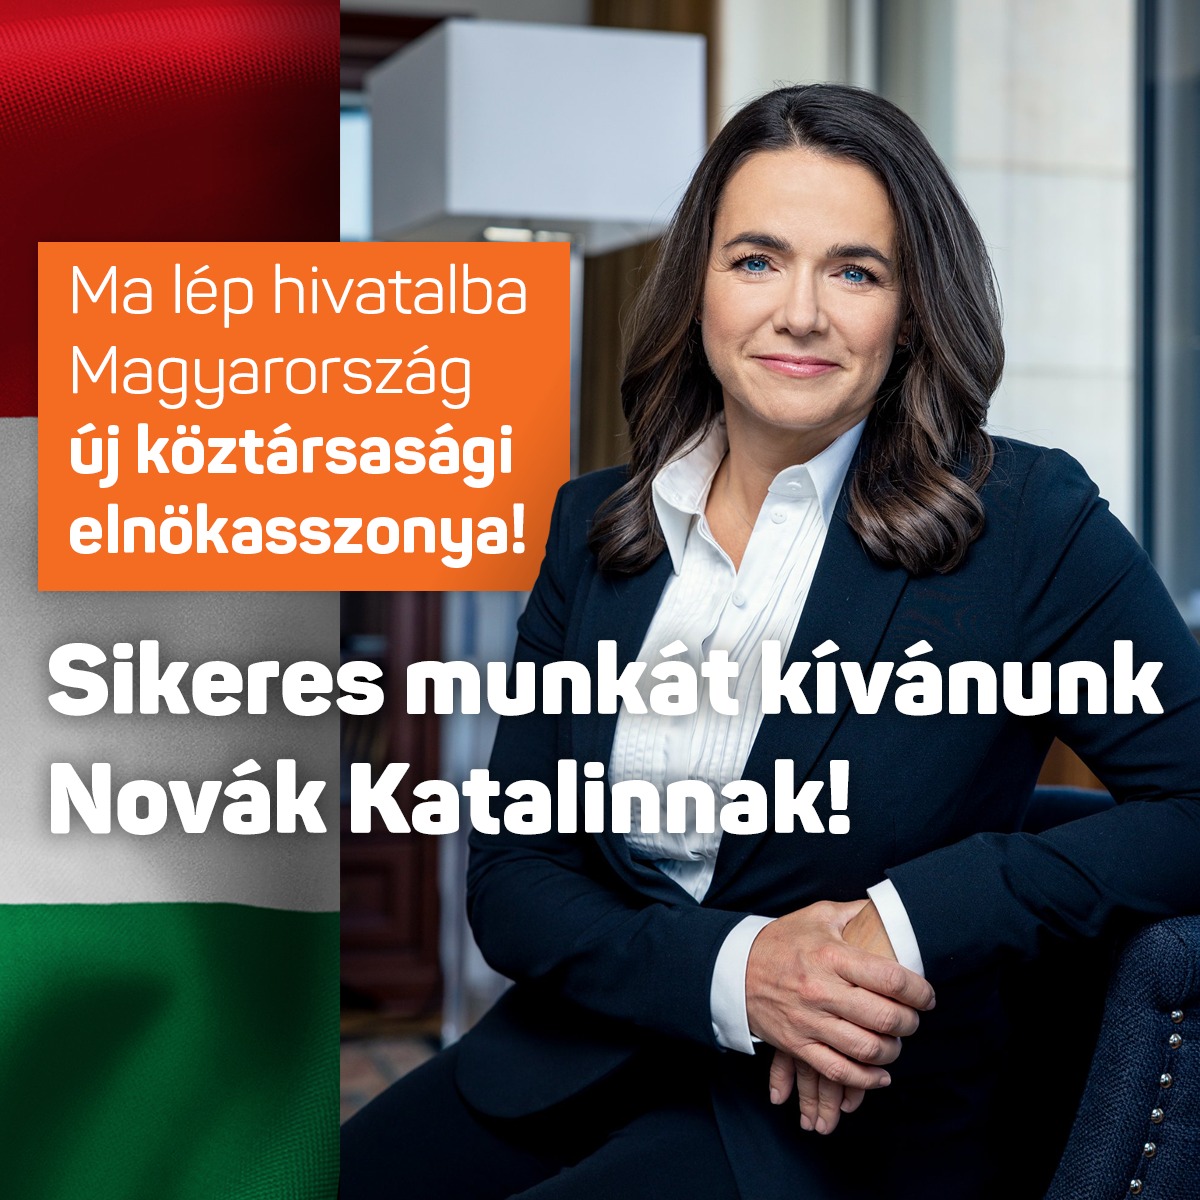 Ma lép hivatalba Magyarország új köztársasági elnökasszonya! Sikeres munkát kívánunk Novák Katalinnak!